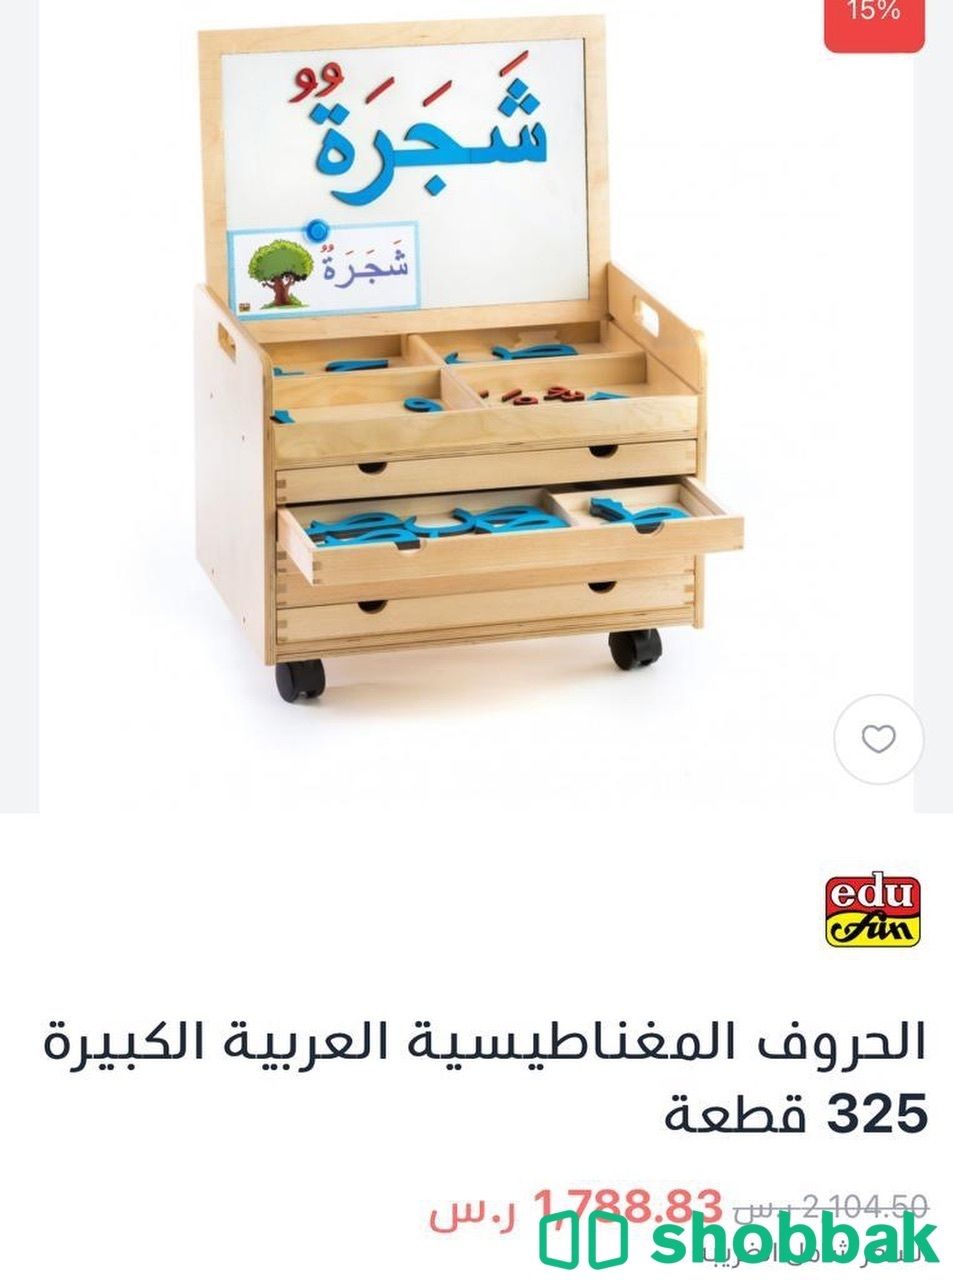 أحرف عربية خشبية مغناطيسية بحجم كبير ( البيع لأعلى سعر) شباك السعودية